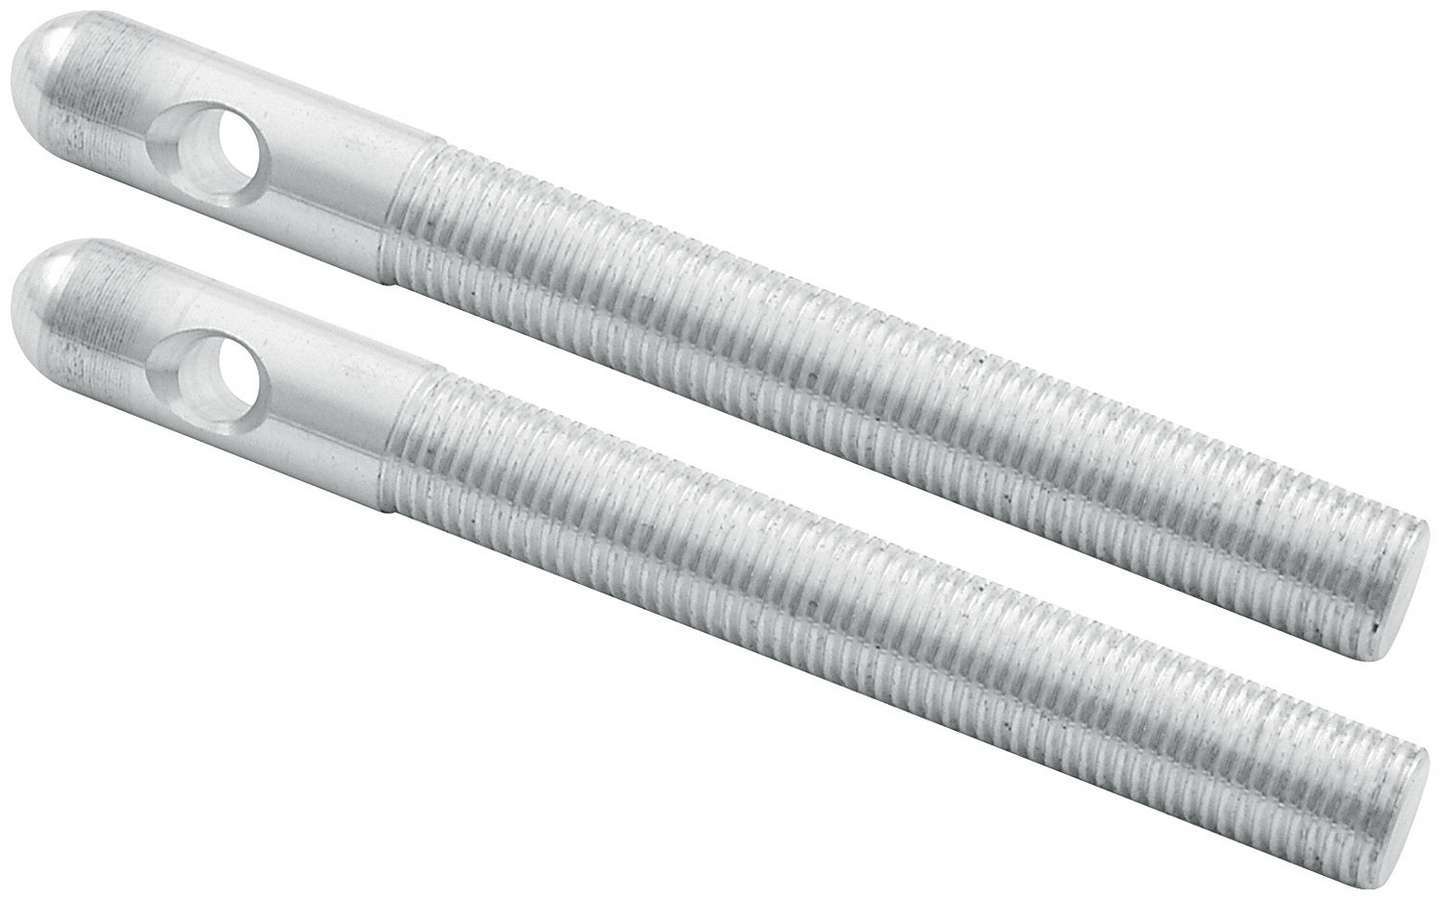 Repl Aluminum Pins 3/8in Silver 2pk - 18487